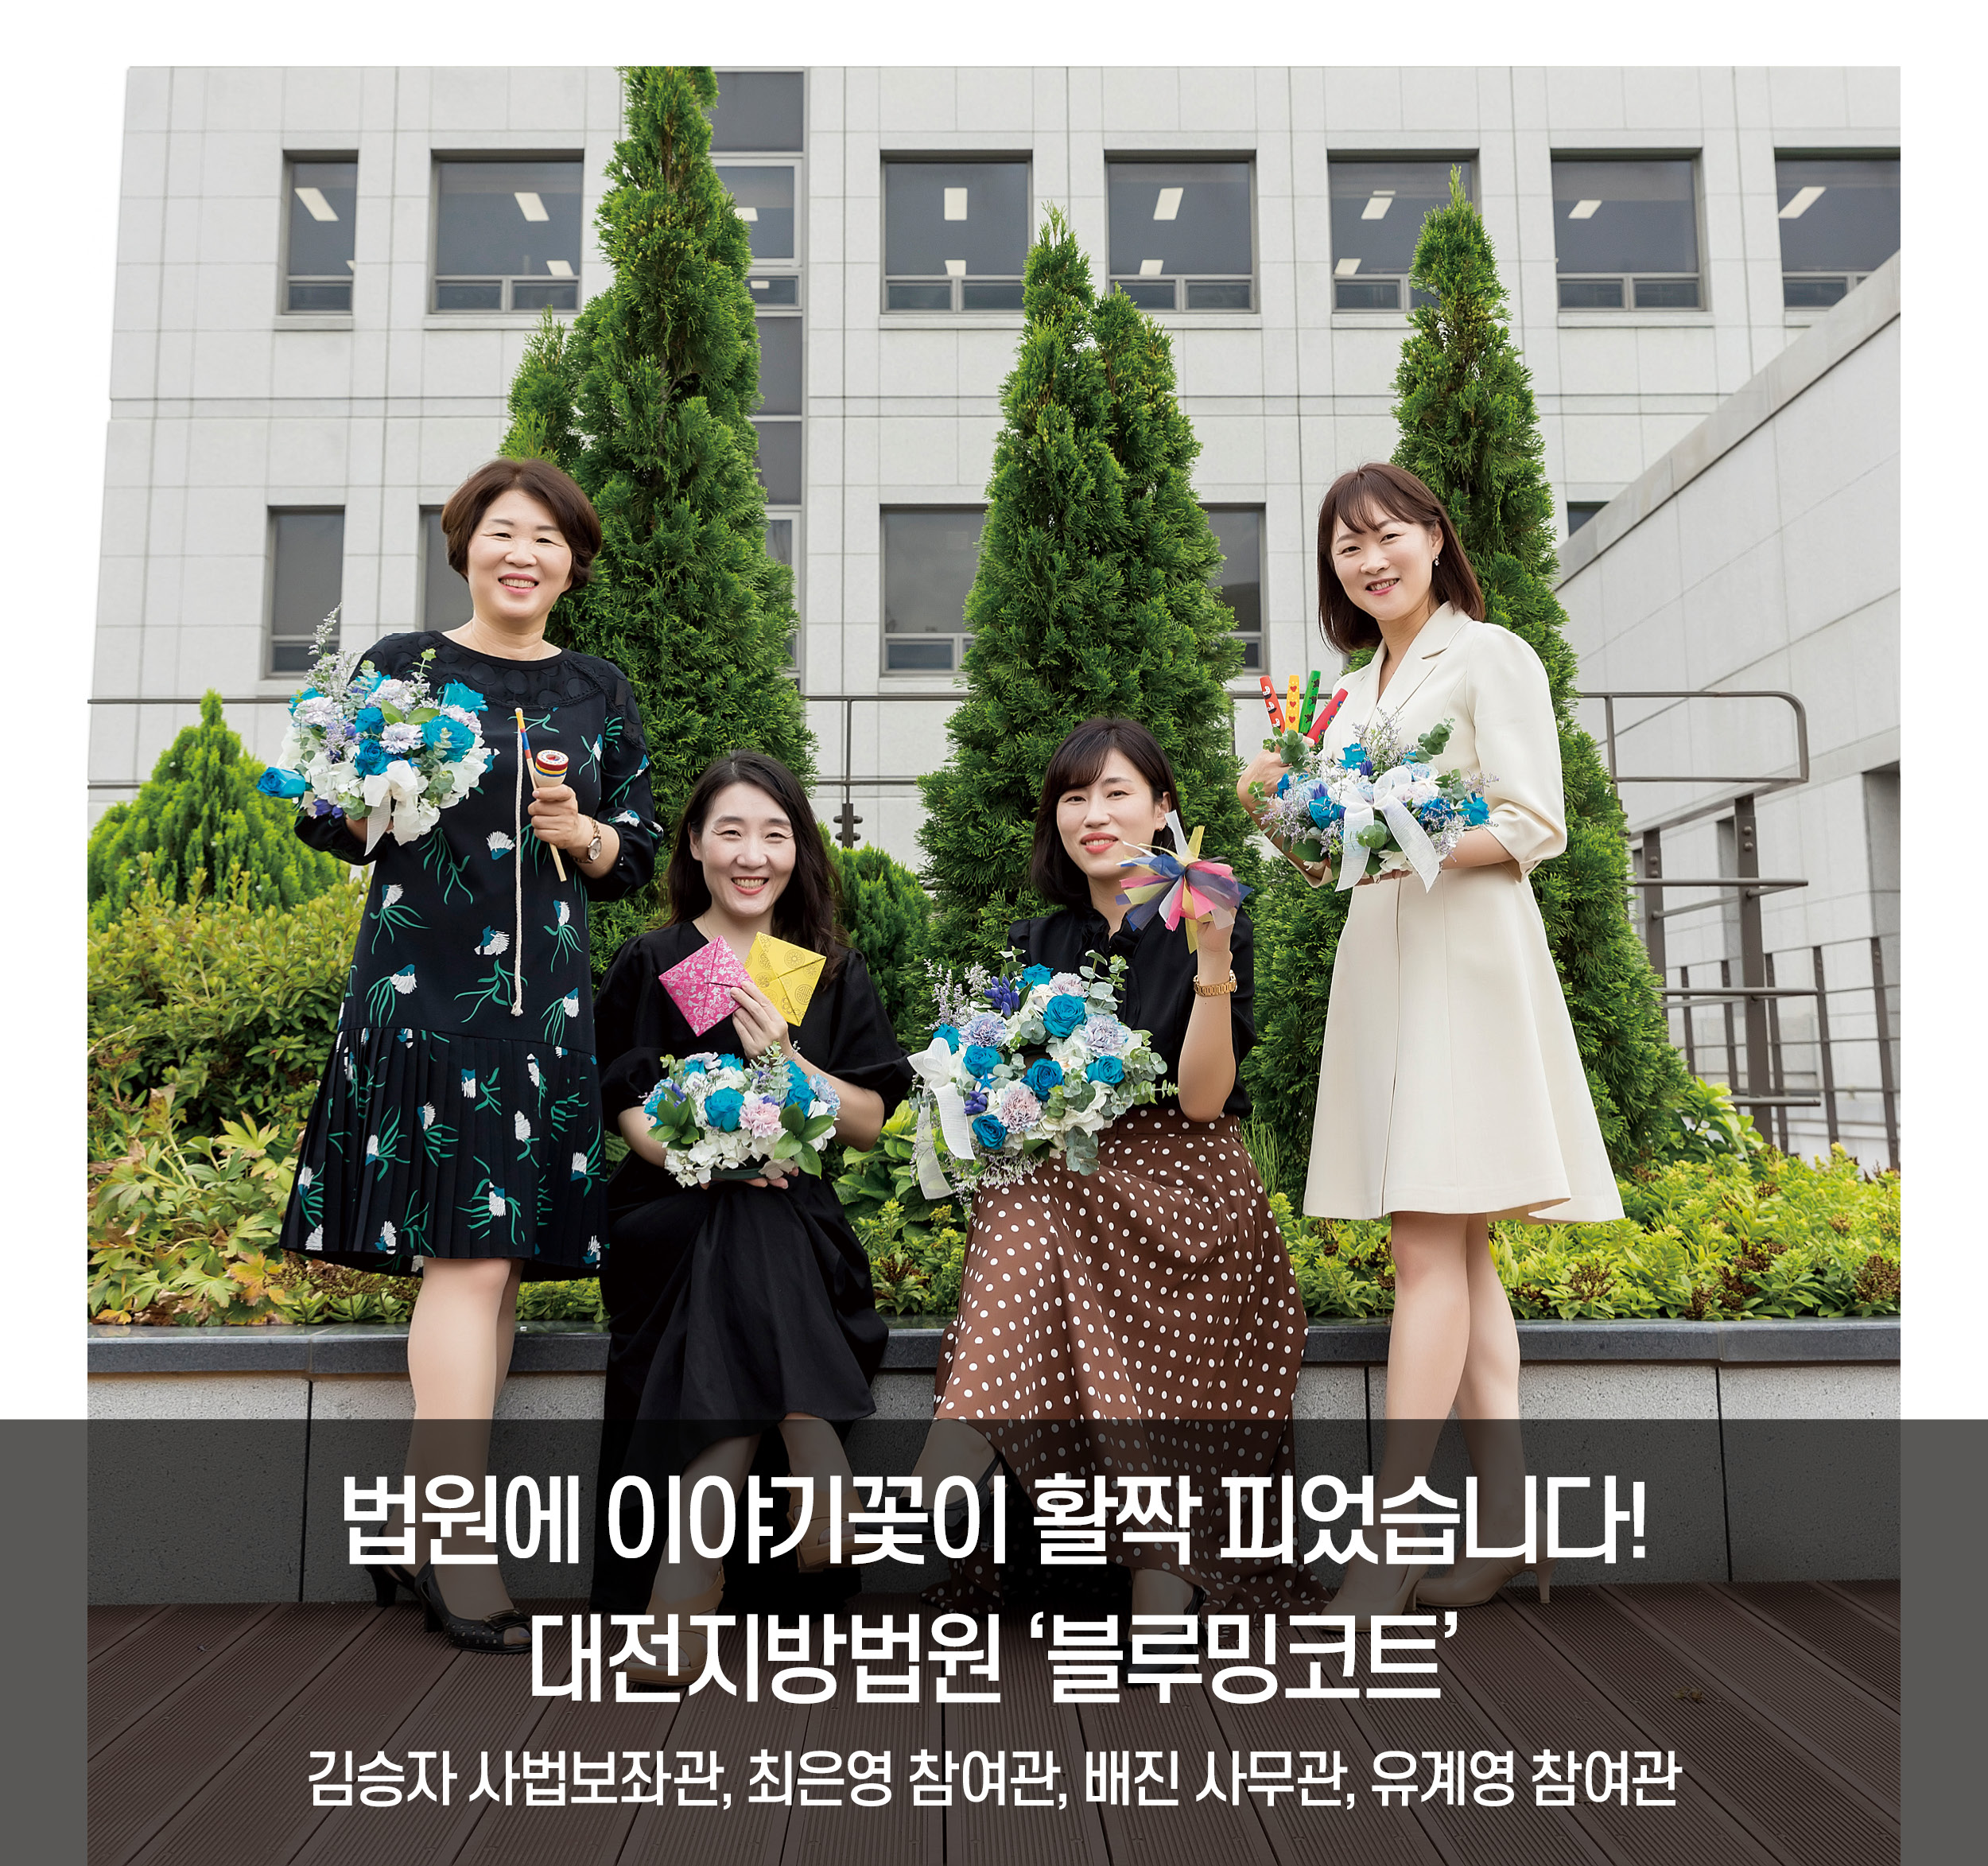 [함께 즐겨요] 법원에 이야기꽃이 활짝 피었습니다! '대전지방법원 블루밍코트'